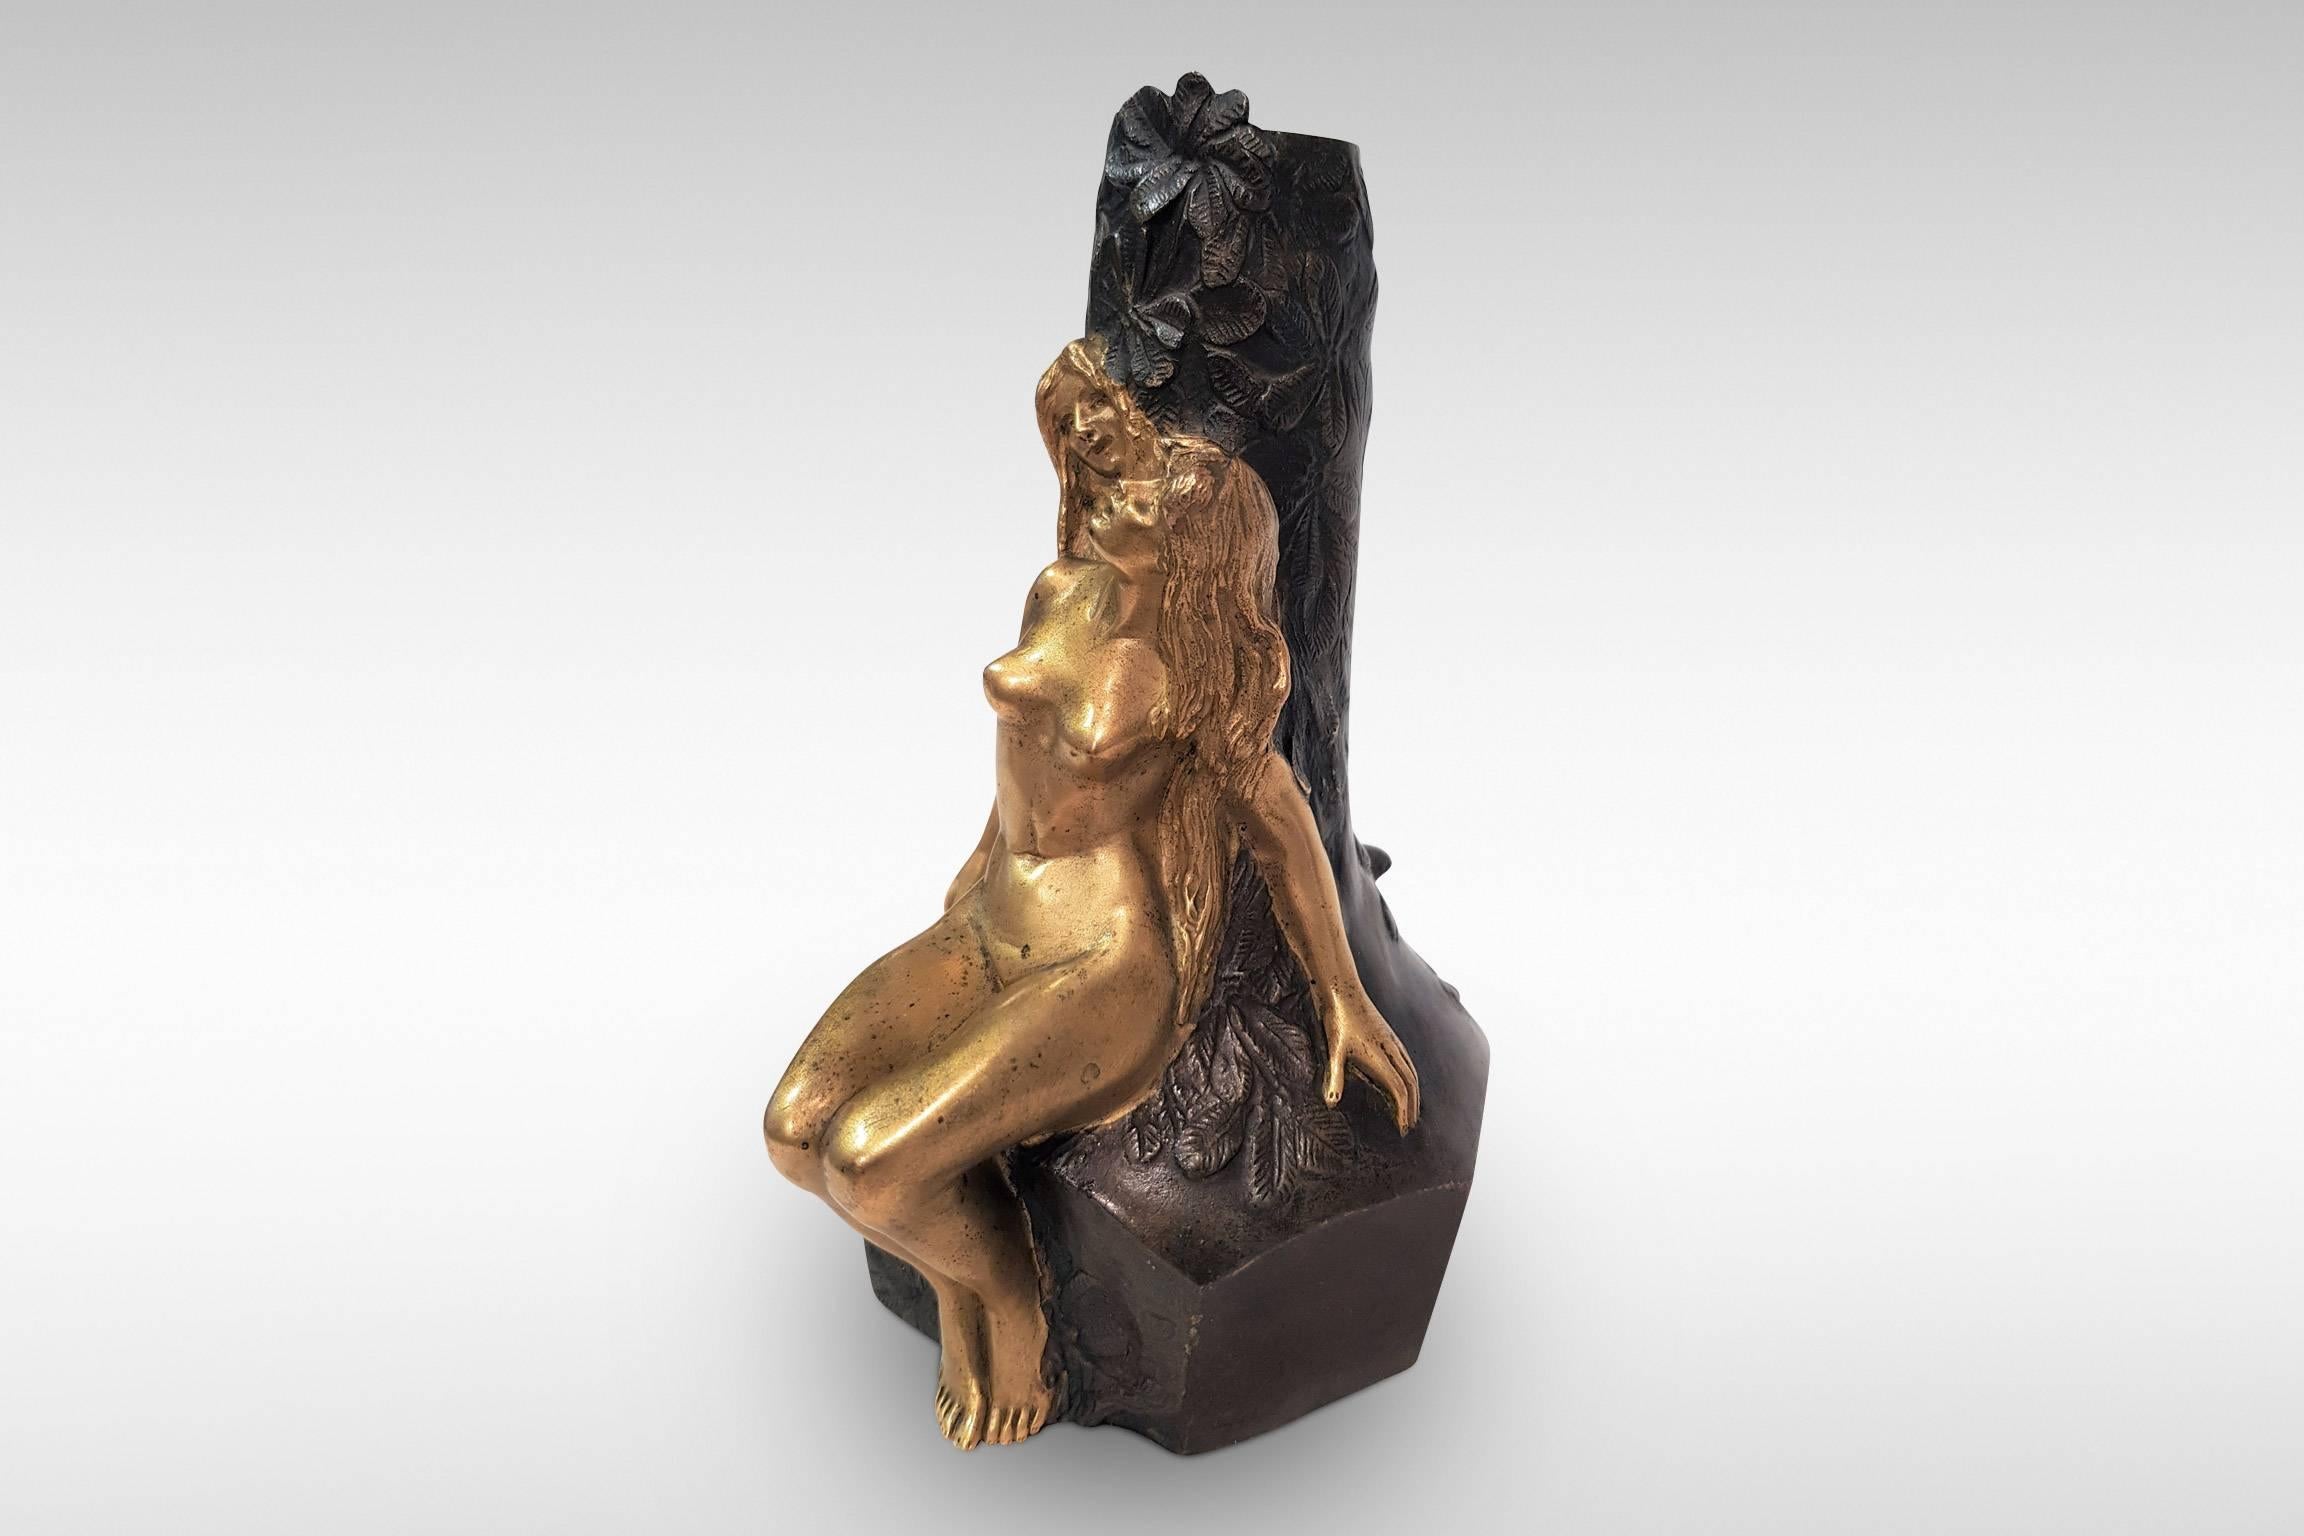 'Fee Des Bois', ('Woodland Fairy') is an Art Nouveau bronze and gilt sculpture by Charles Korschann, dating from circa 1900.